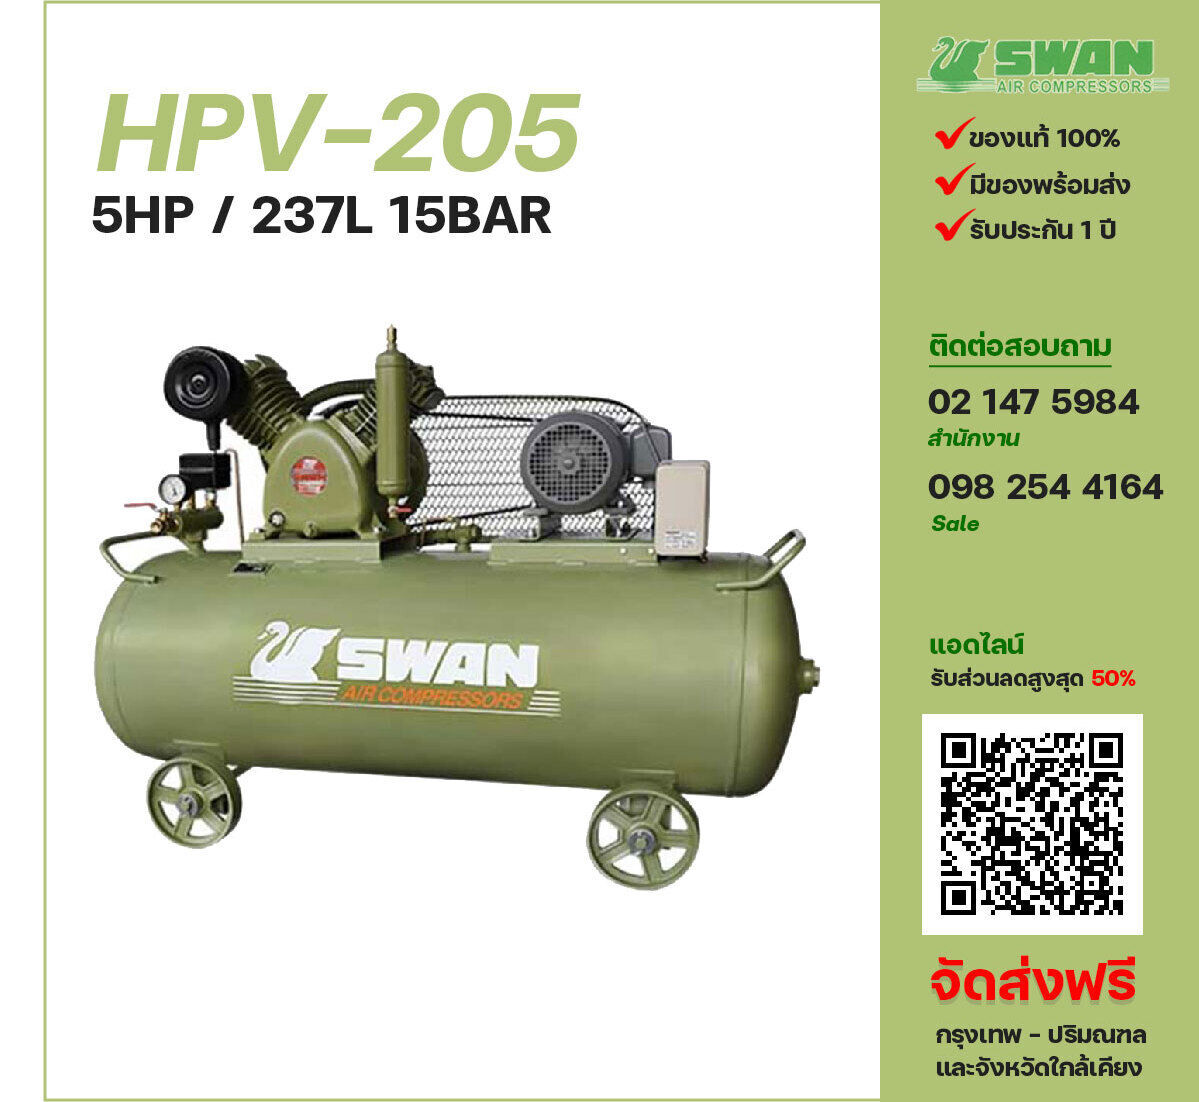 ปั๊มลมสวอนแรงดันสูง SWAN Two-Stage HPV-205 ปั๊มลมลูกสูบ ขนาด 2 สูบ 5 แรงม้า 237 ลิตร SWAN พร้อมมอเตอร์ ไฟ 220V/380V ส่งฟรี กรุงเทพฯ-ปริมณฑล รับประกัน 1 ปี